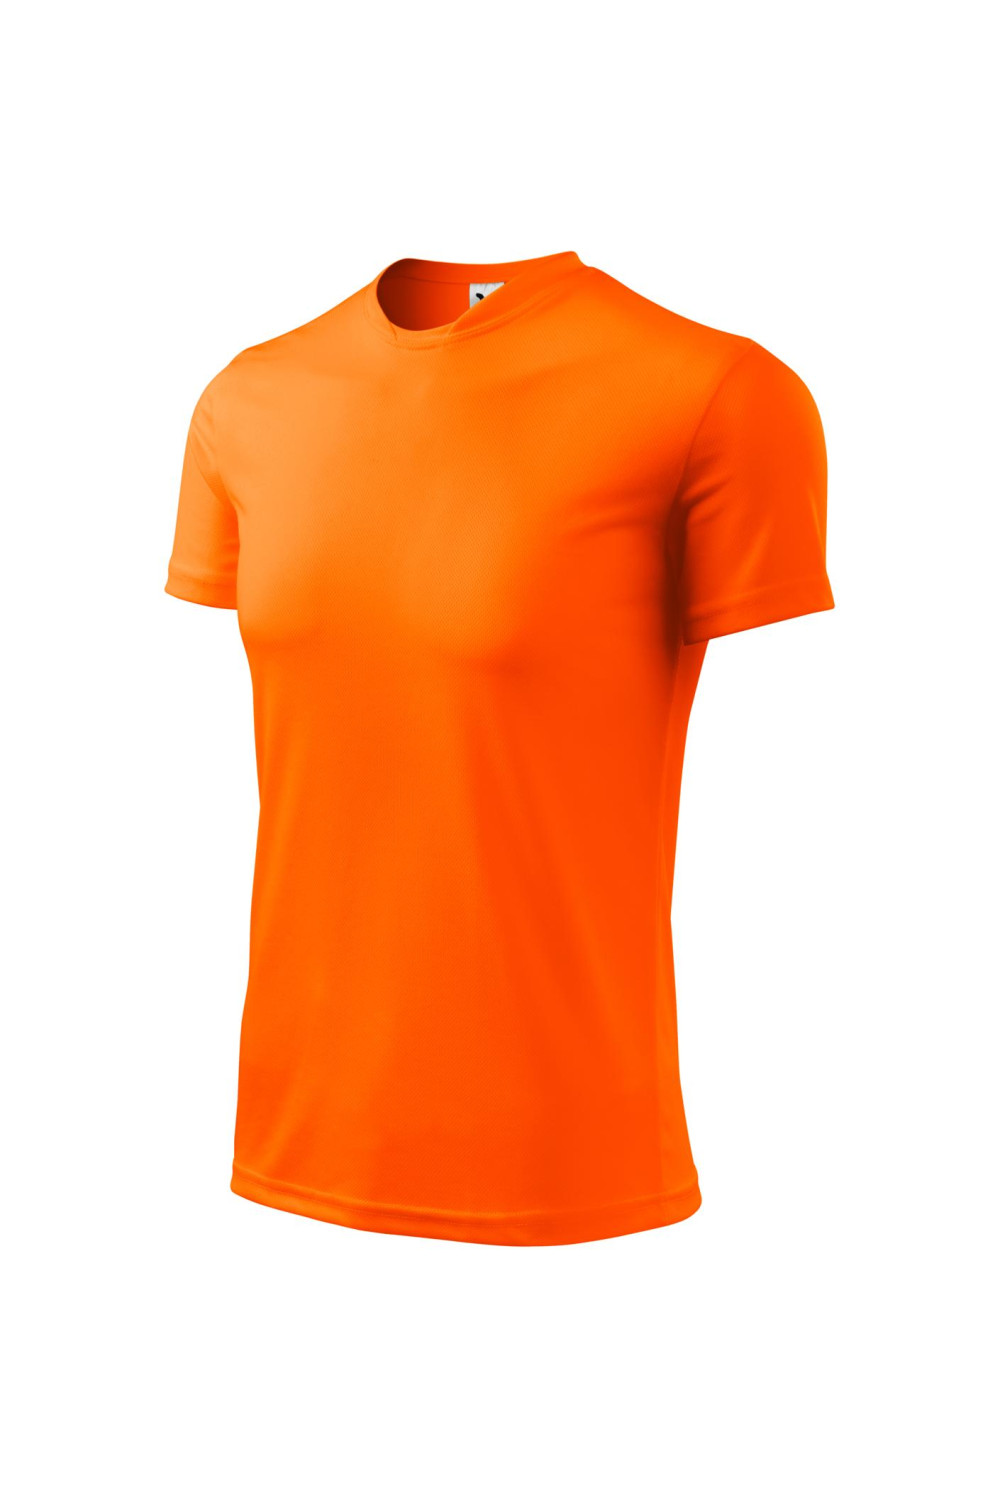 FANTASY 124 MALFINI ADLER Koszulka męska sportowa poliester neon orange